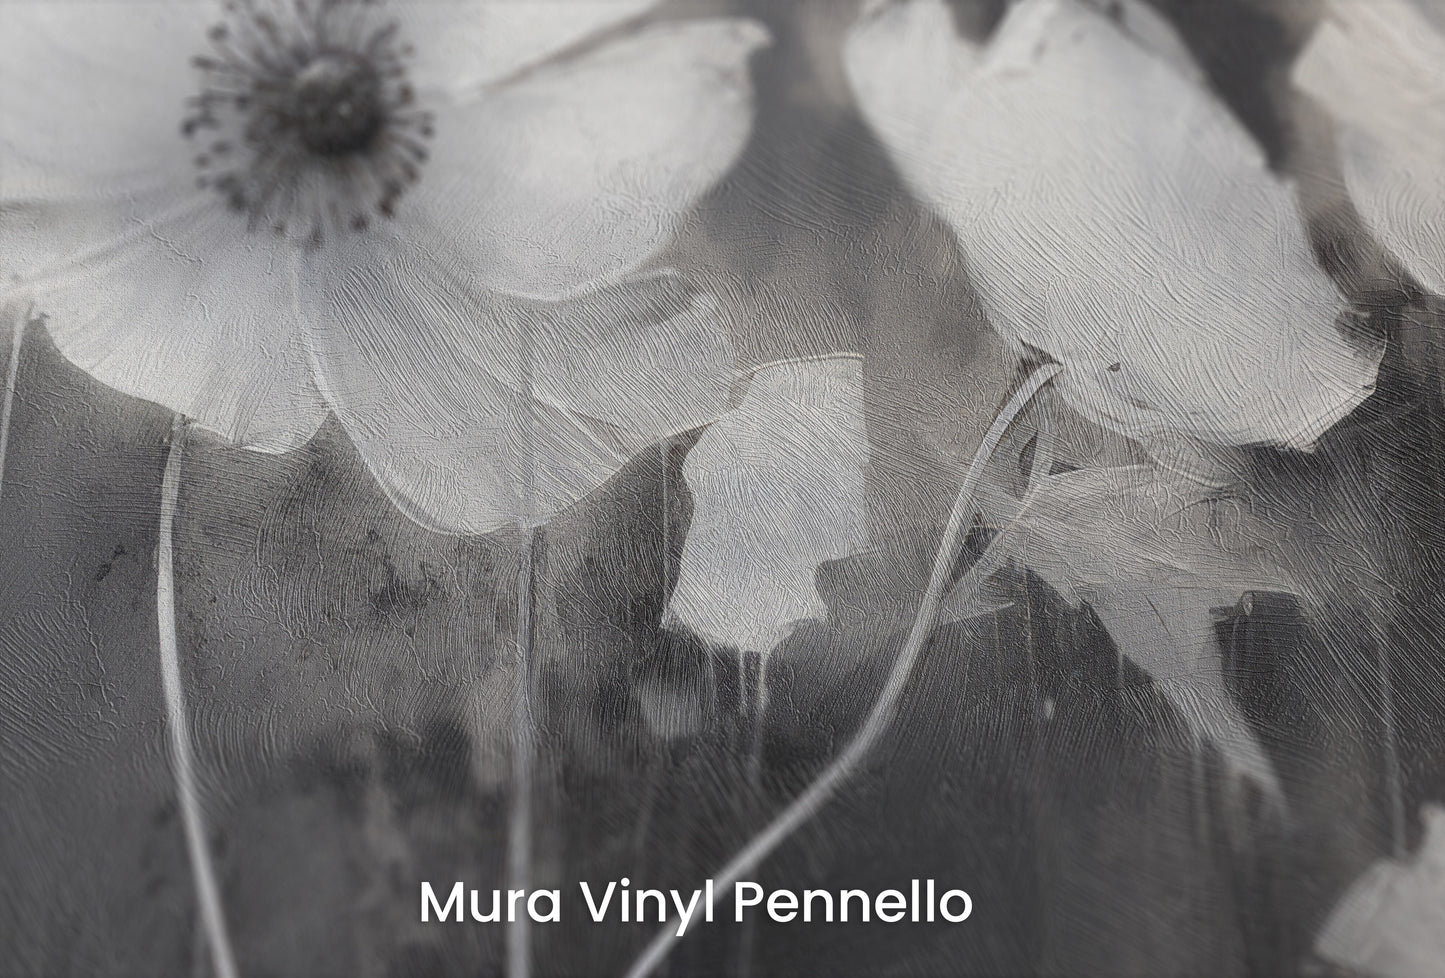 Zbliżenie na artystyczną fototapetę o nazwie NOCTURNAL BLOOMS na podłożu Mura Vinyl Pennello - faktura pociągnięć pędzla malarskiego.